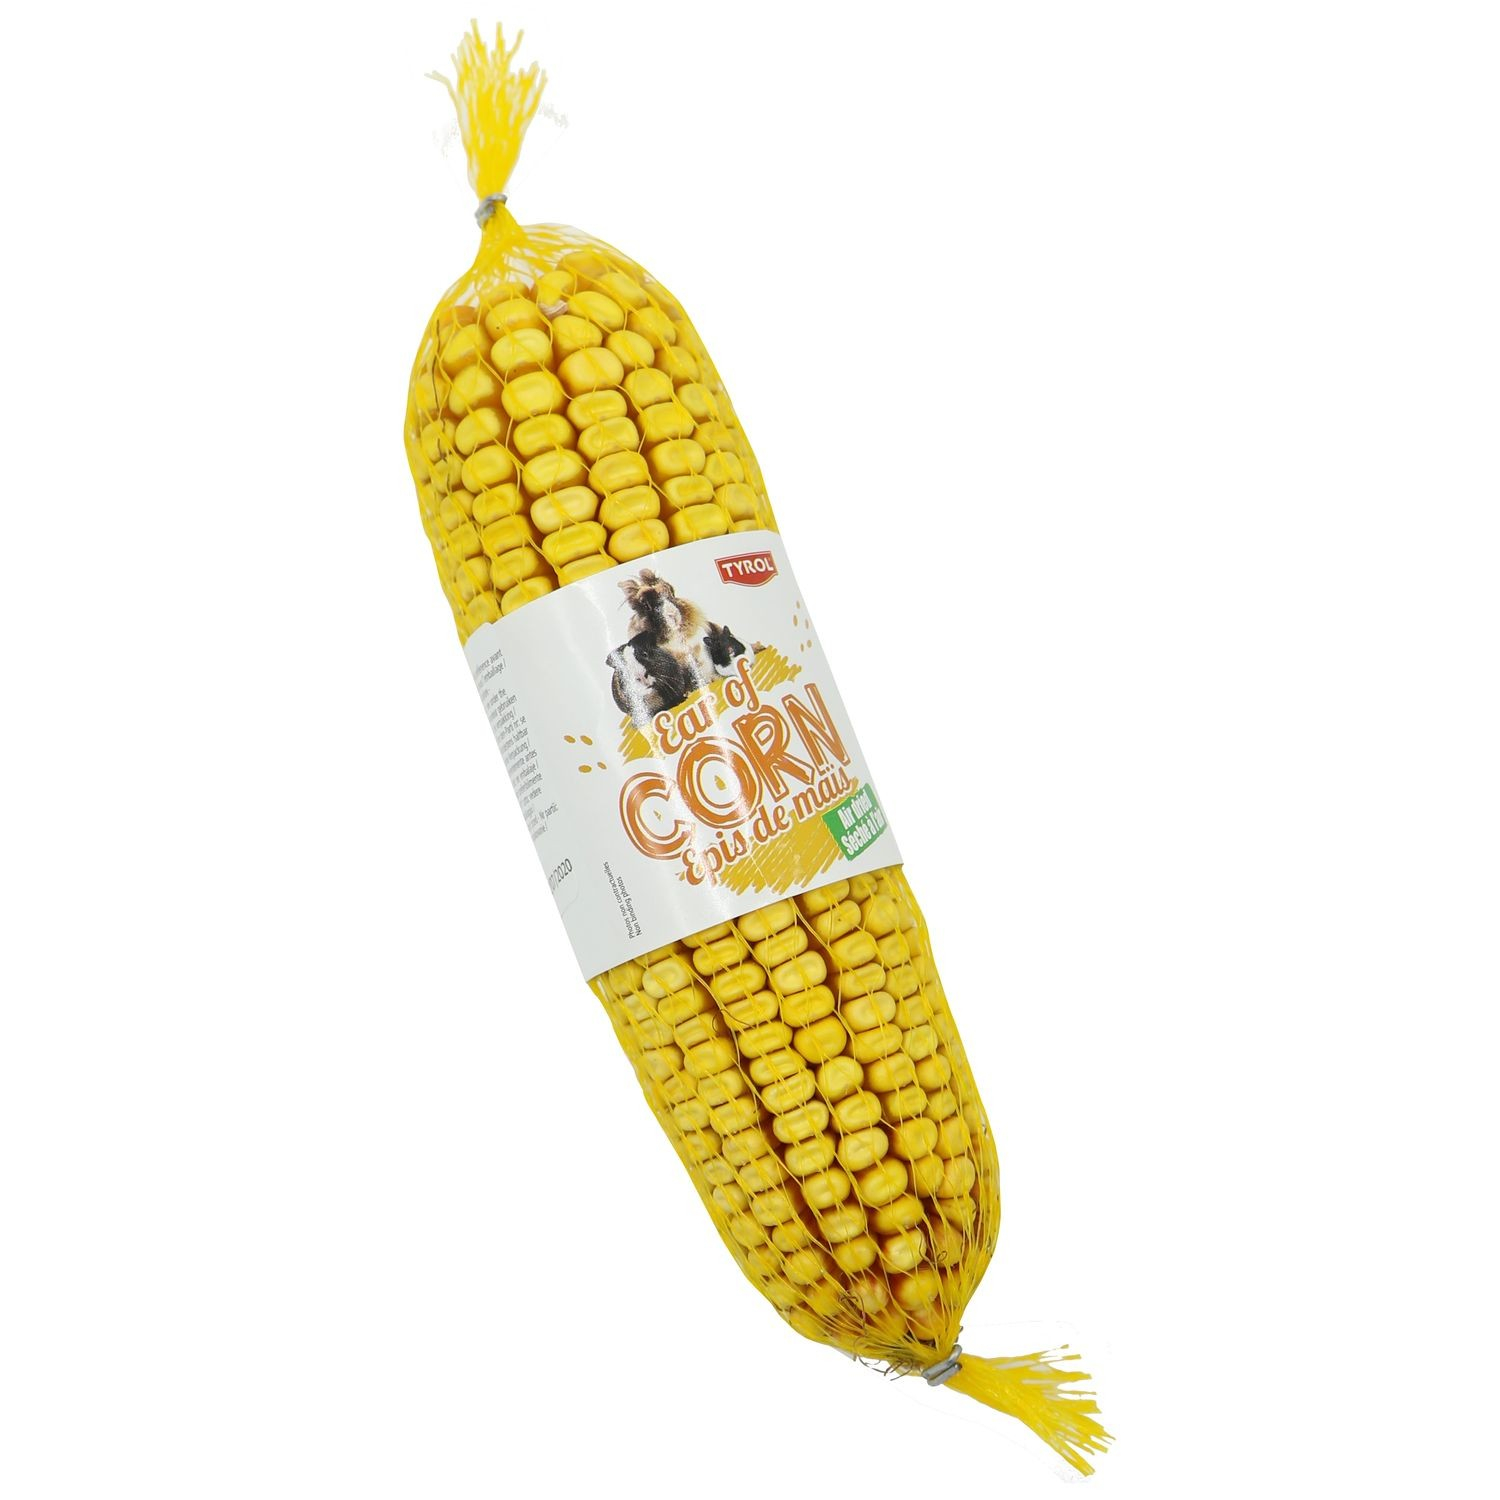 Tyrol Espiga de maíz de Bresse